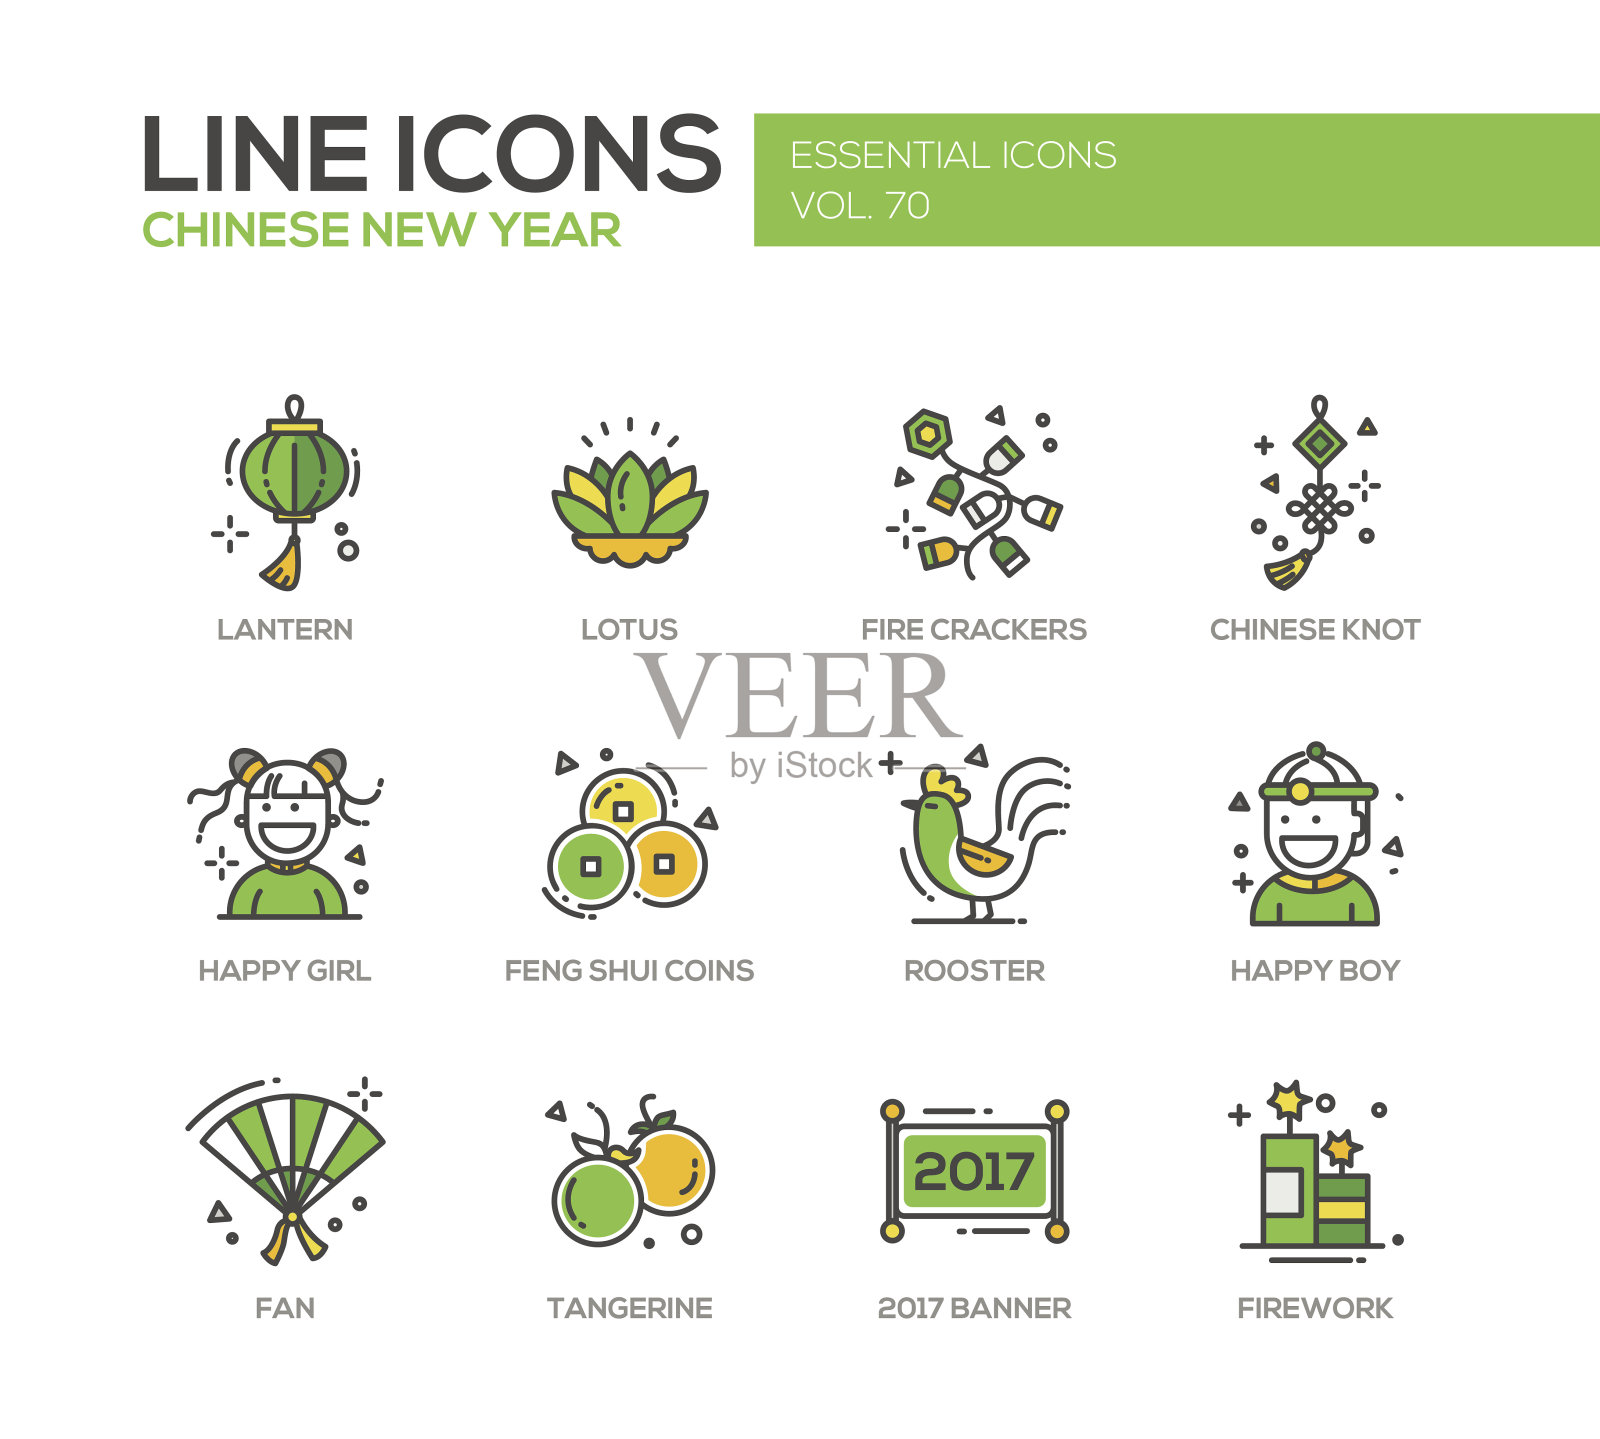 中国新年标志系列设计图标素材